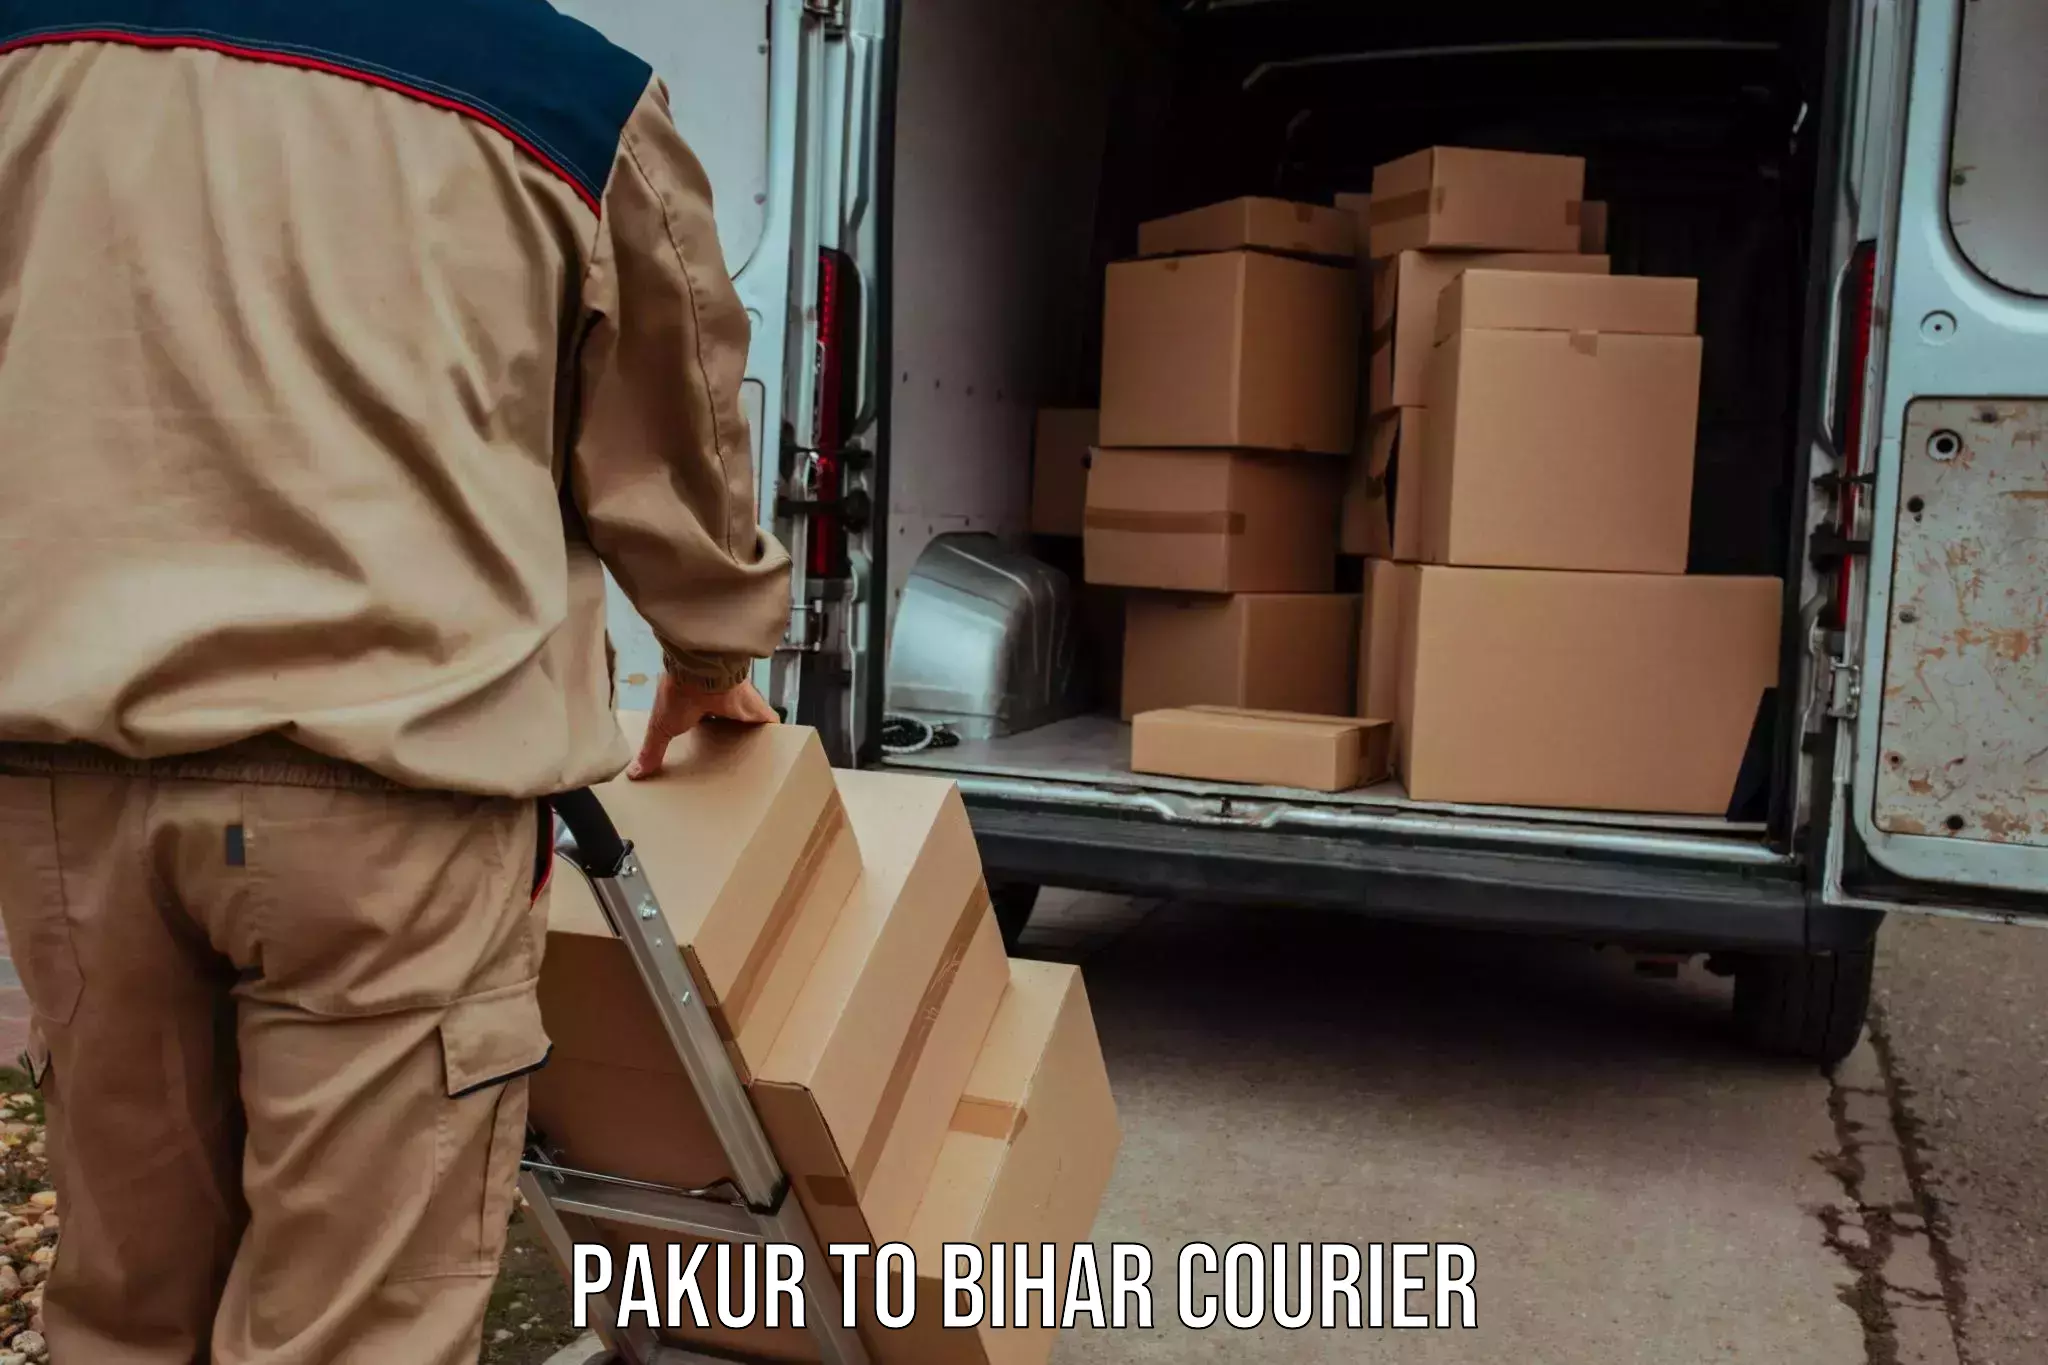 Courier service comparison Pakur to Bihar